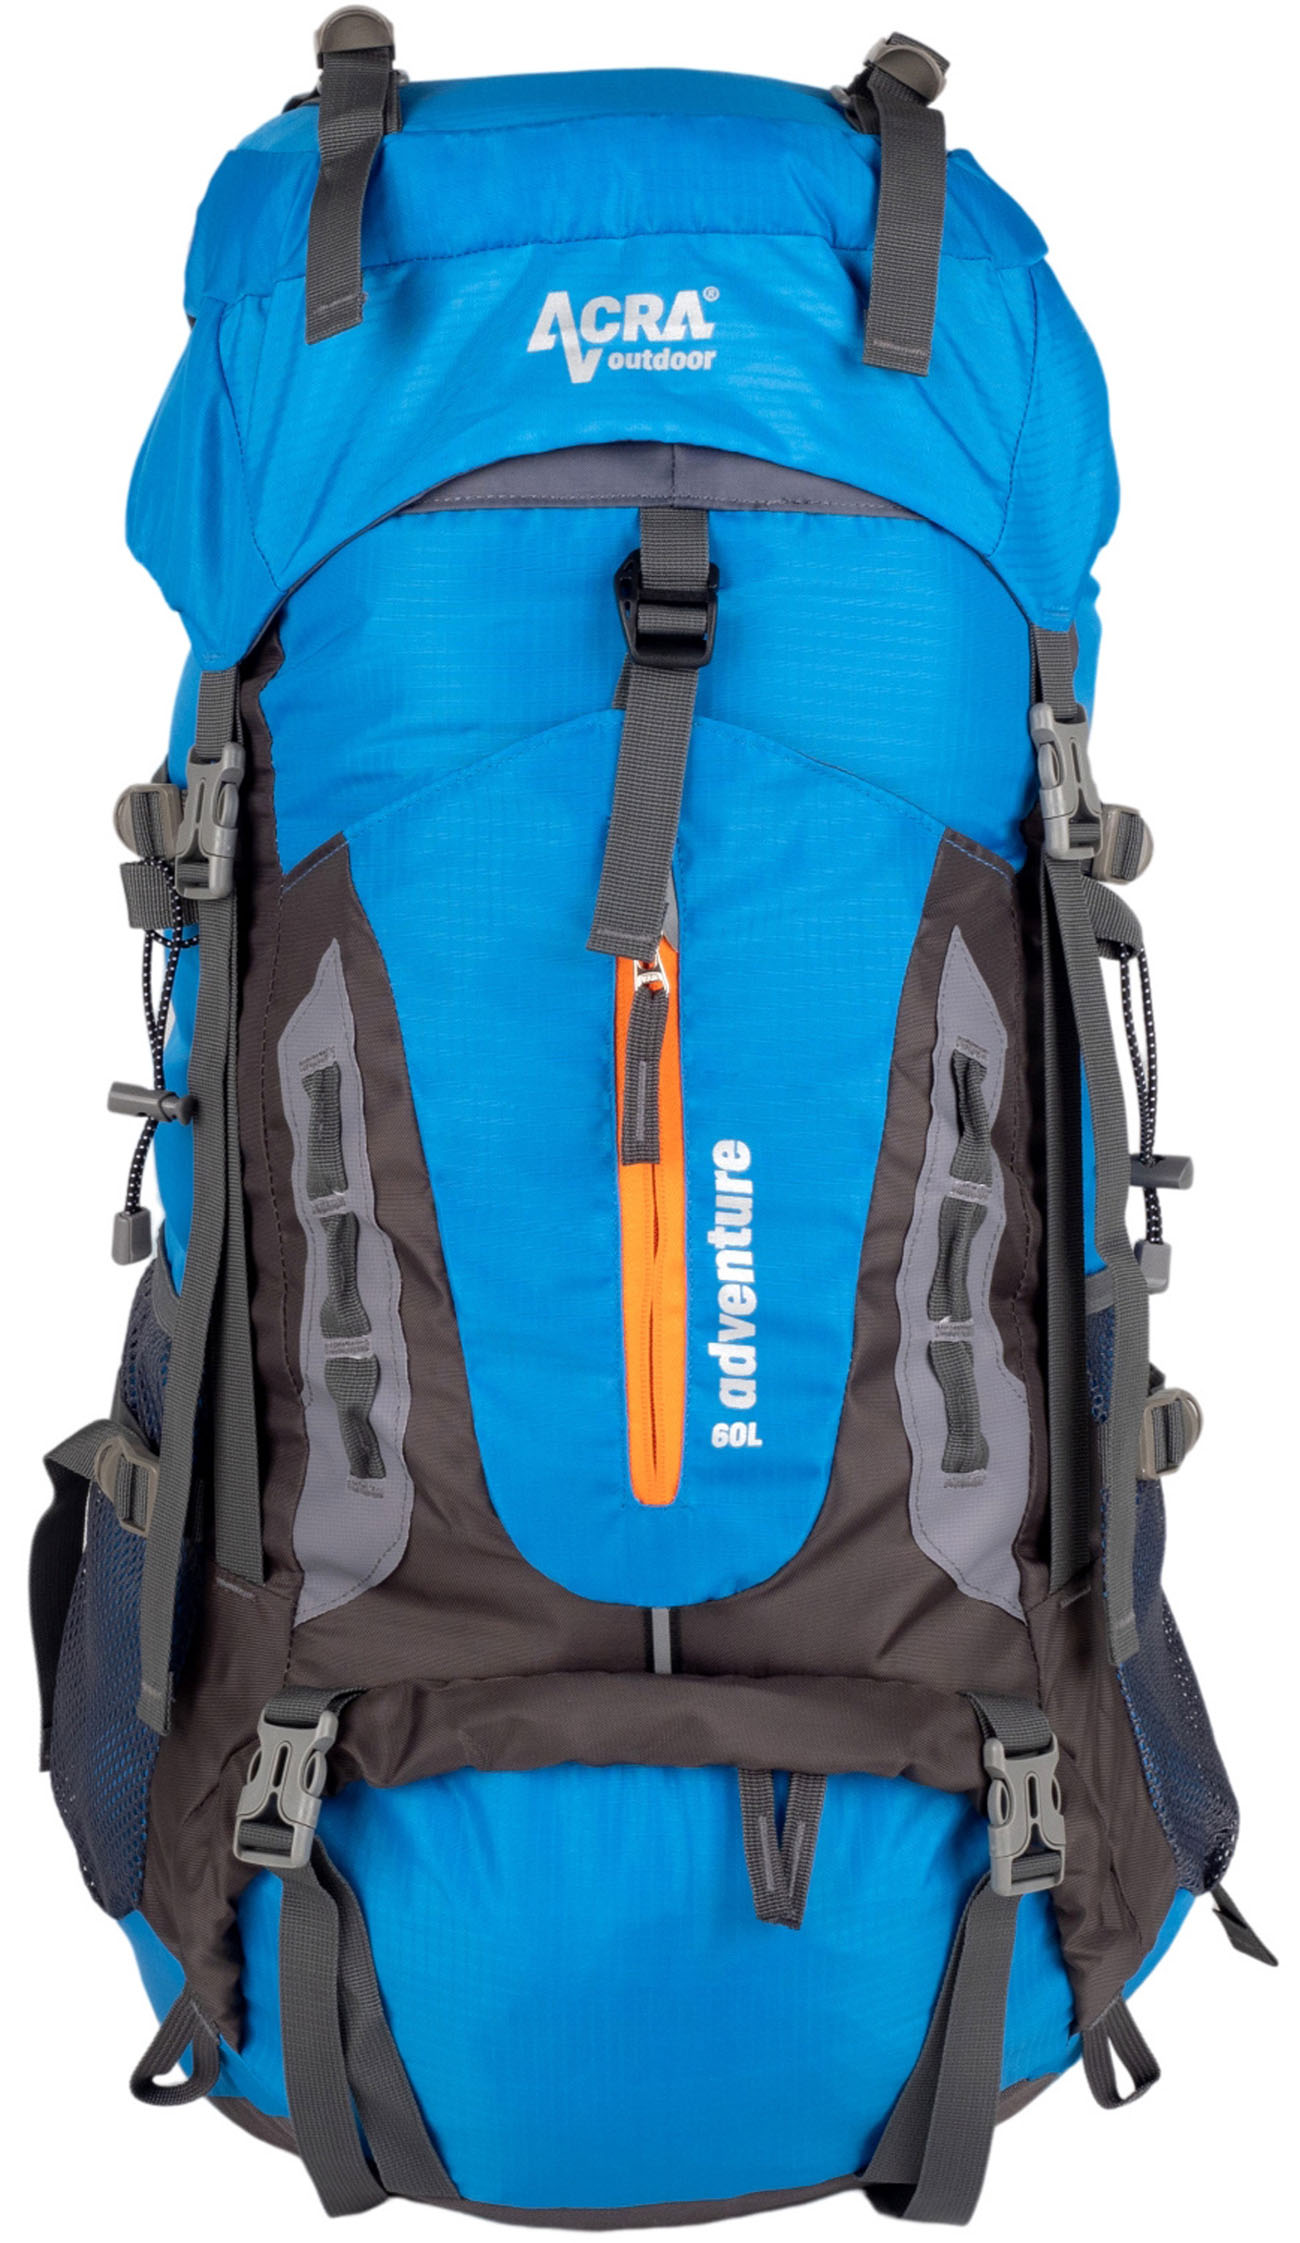 Batoh Adventure 60 L na náročnější horskou turistiku modrý BA60-MO